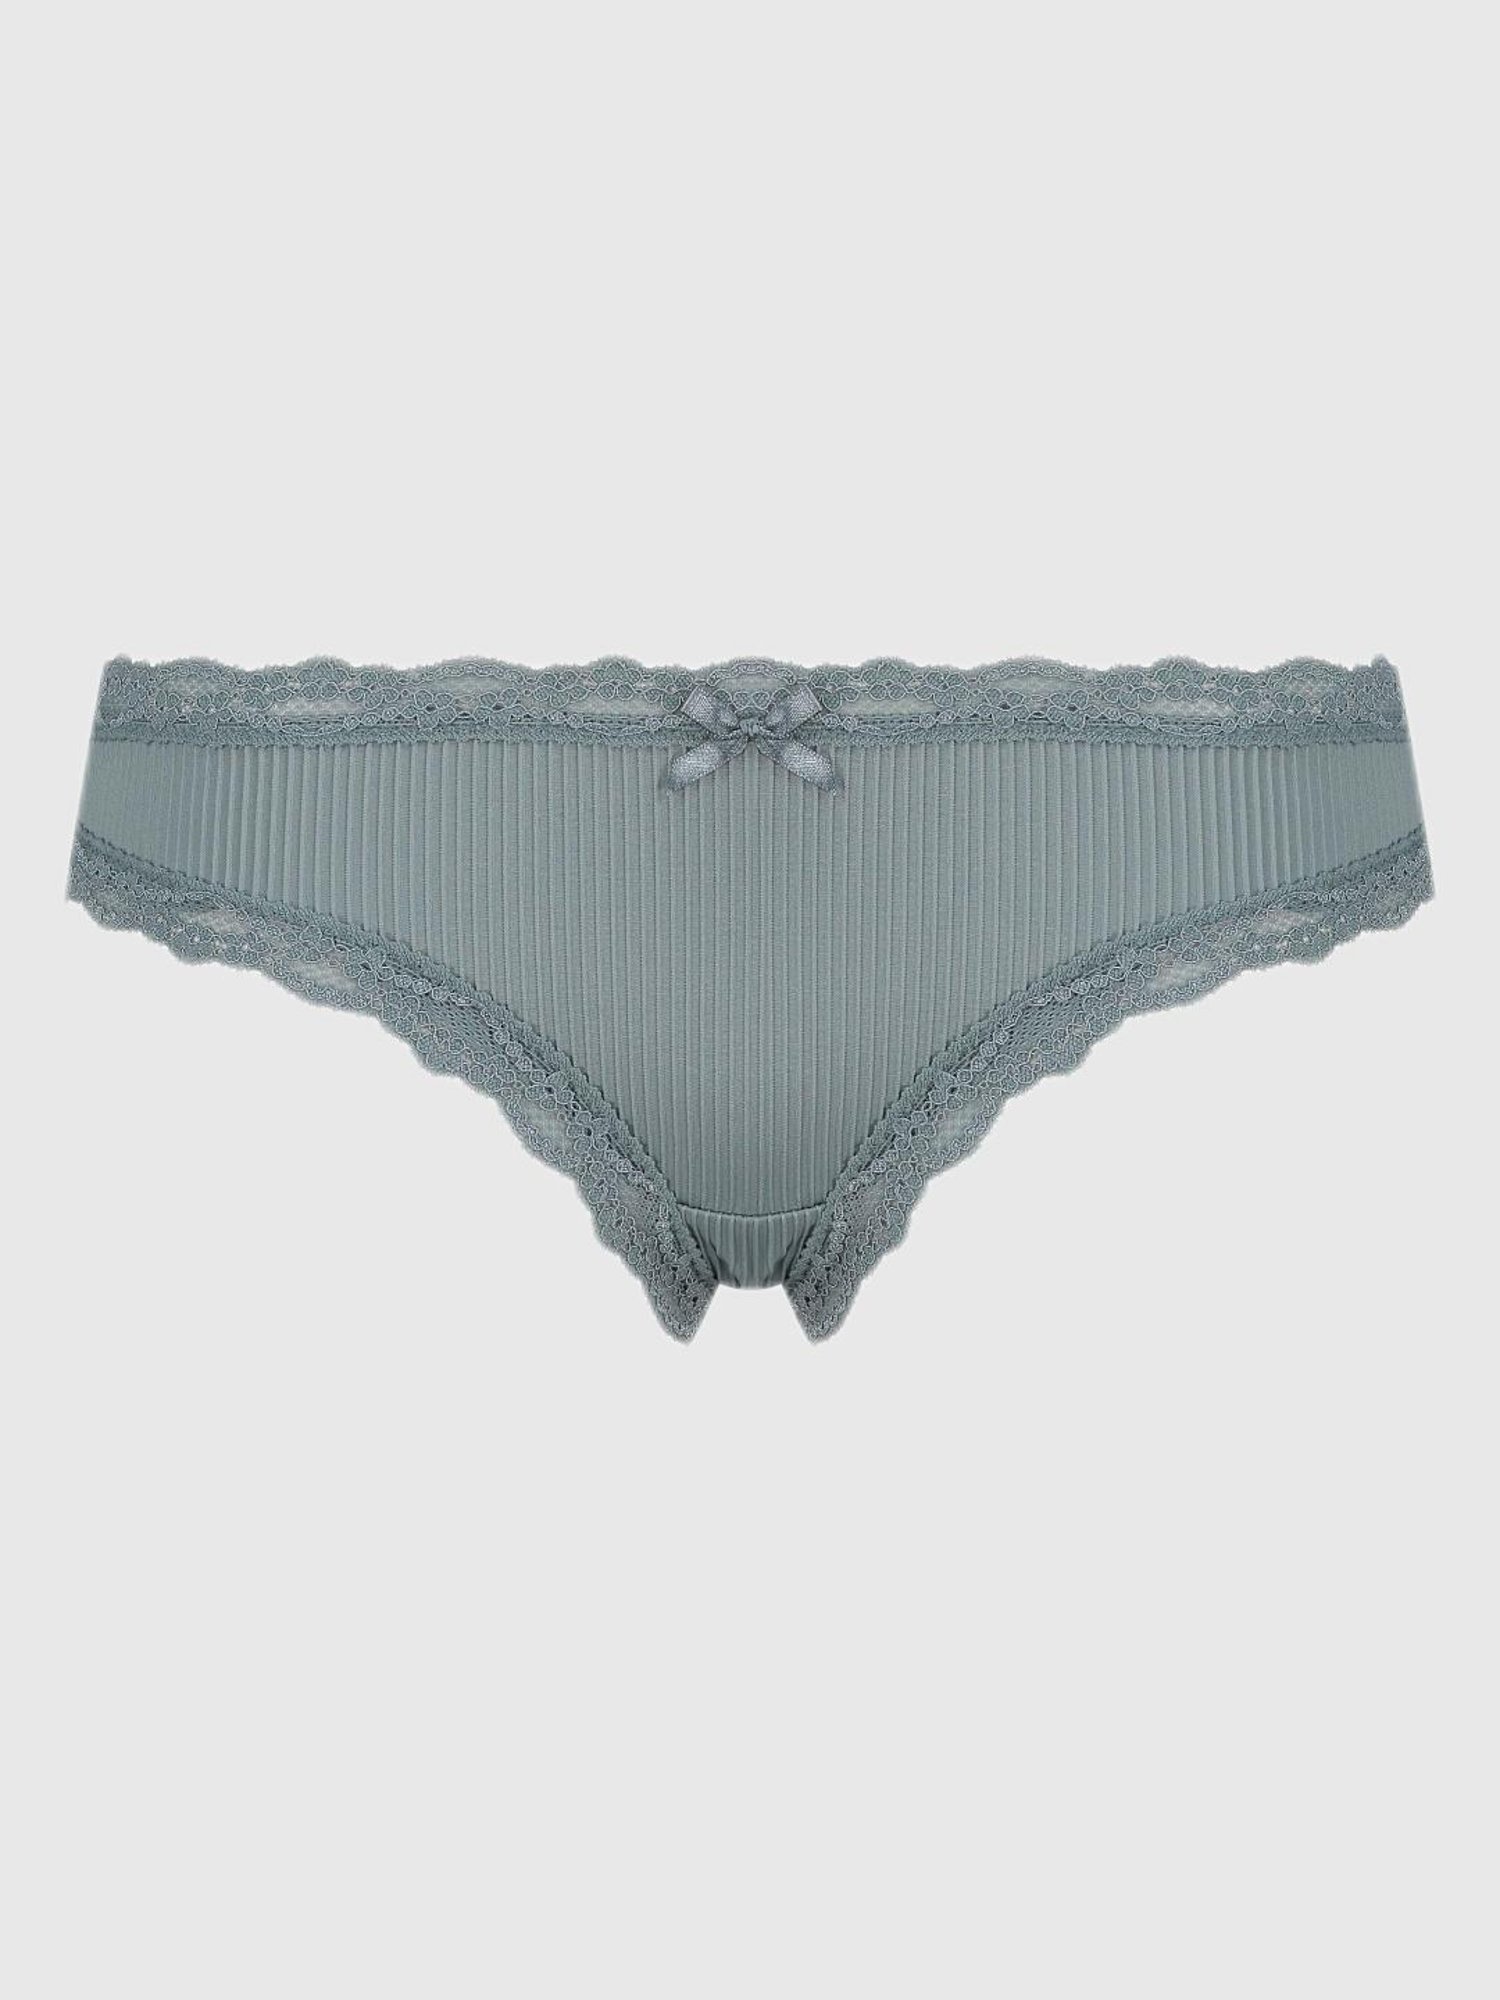 Buy Hunkemoller Lace Print Panties for Women Online @ Tata CLiQ